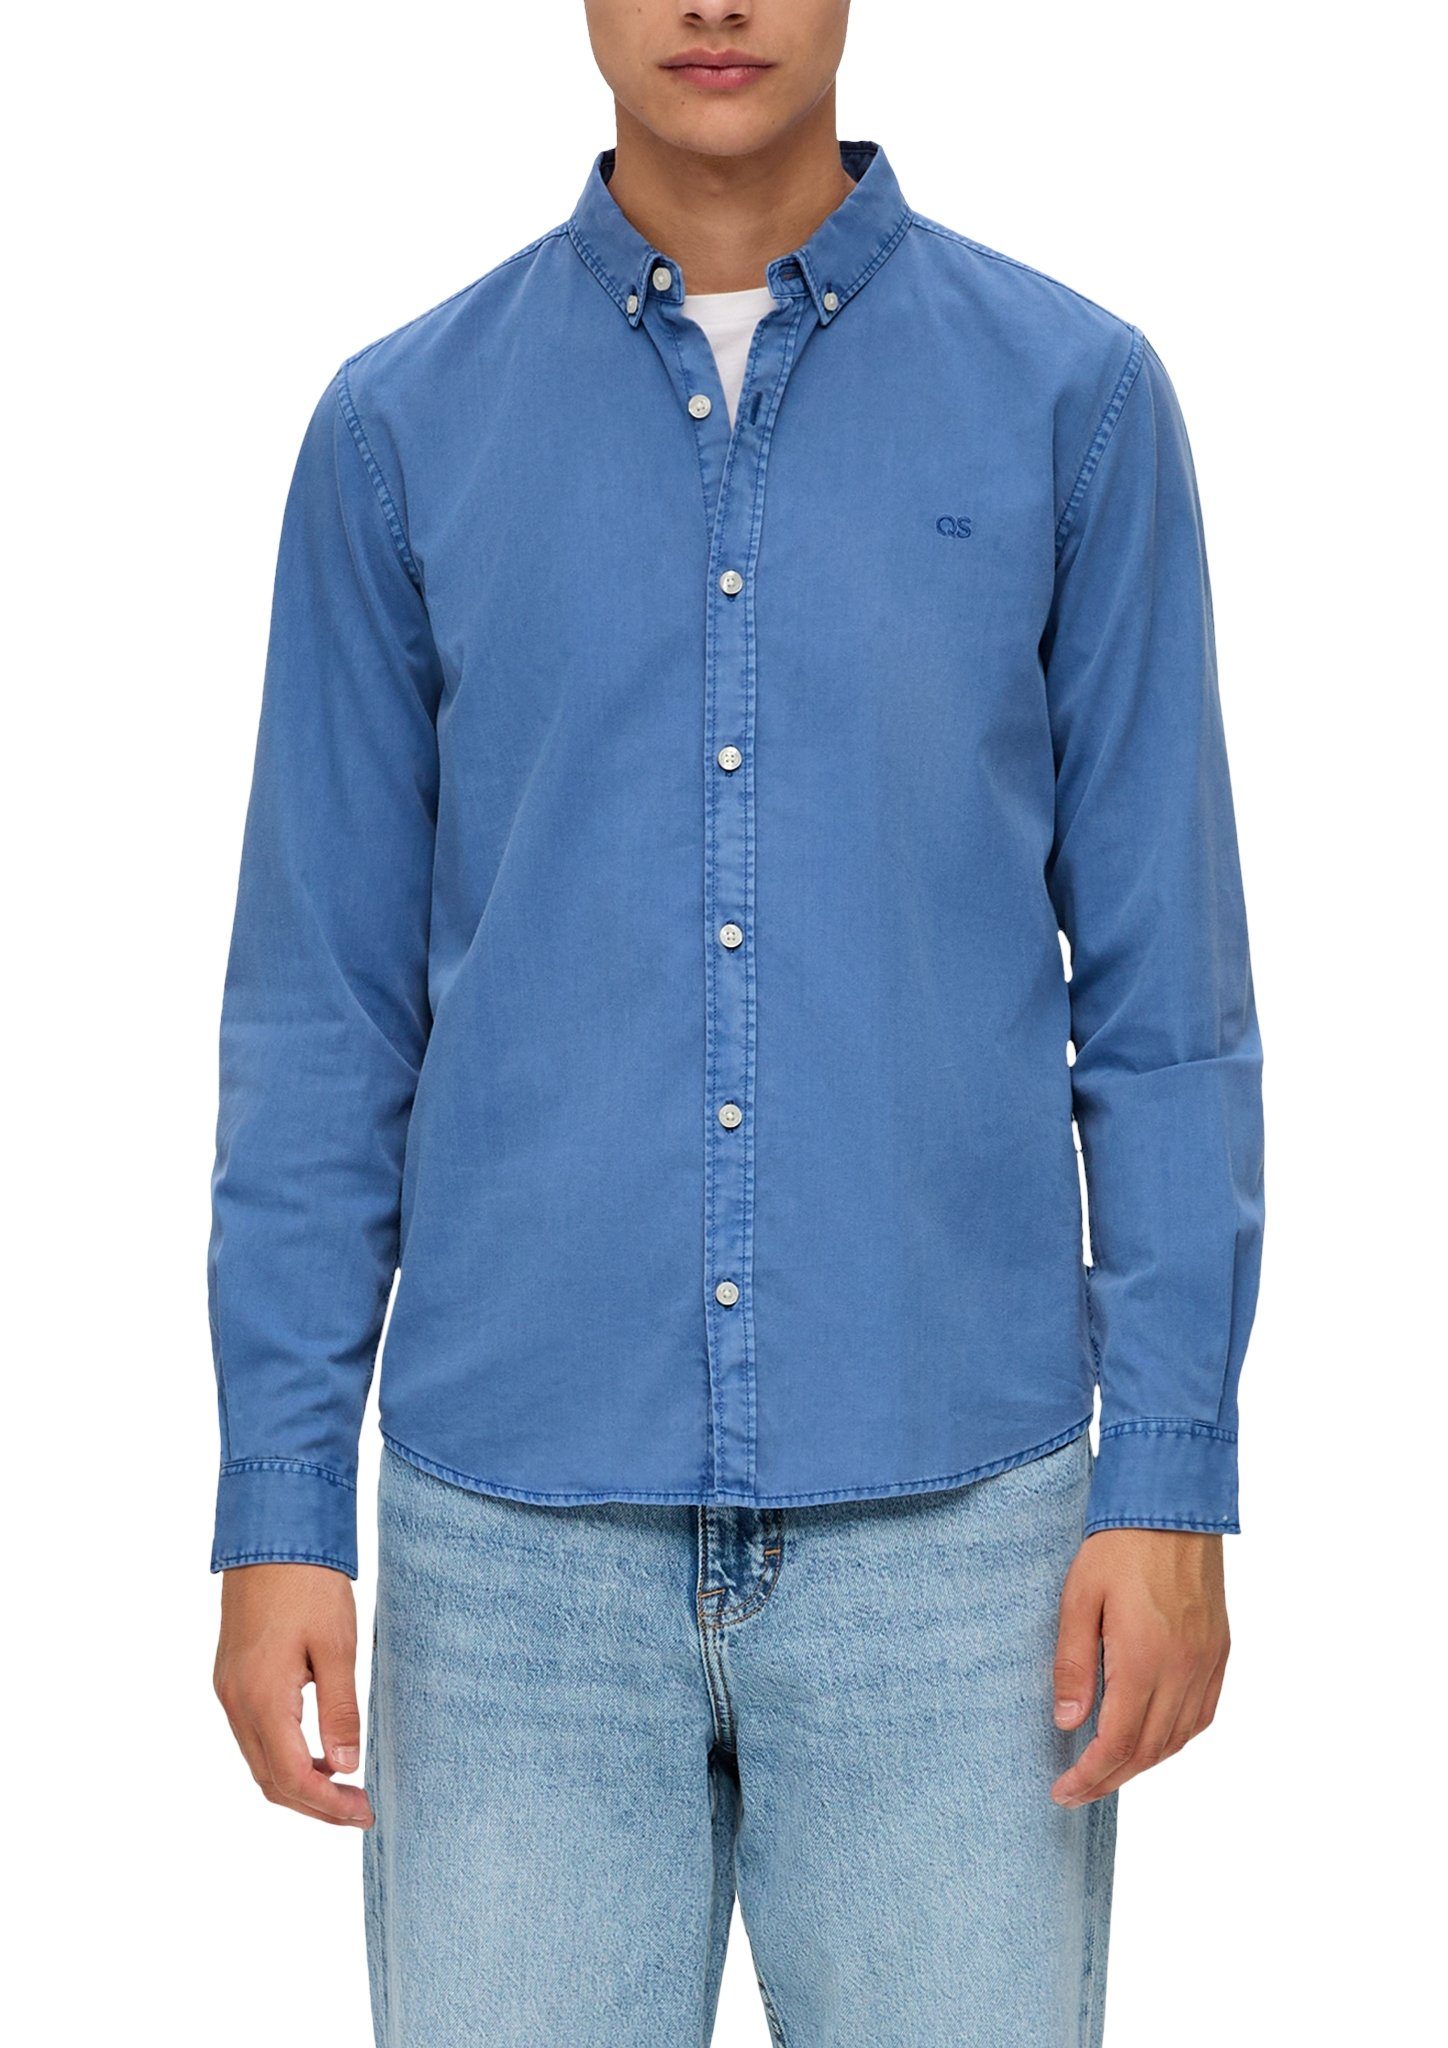 Рубашка мужская QS by s.Oliver 50.3.51.11.120.2134662*5374*L свело-синяя, размер L